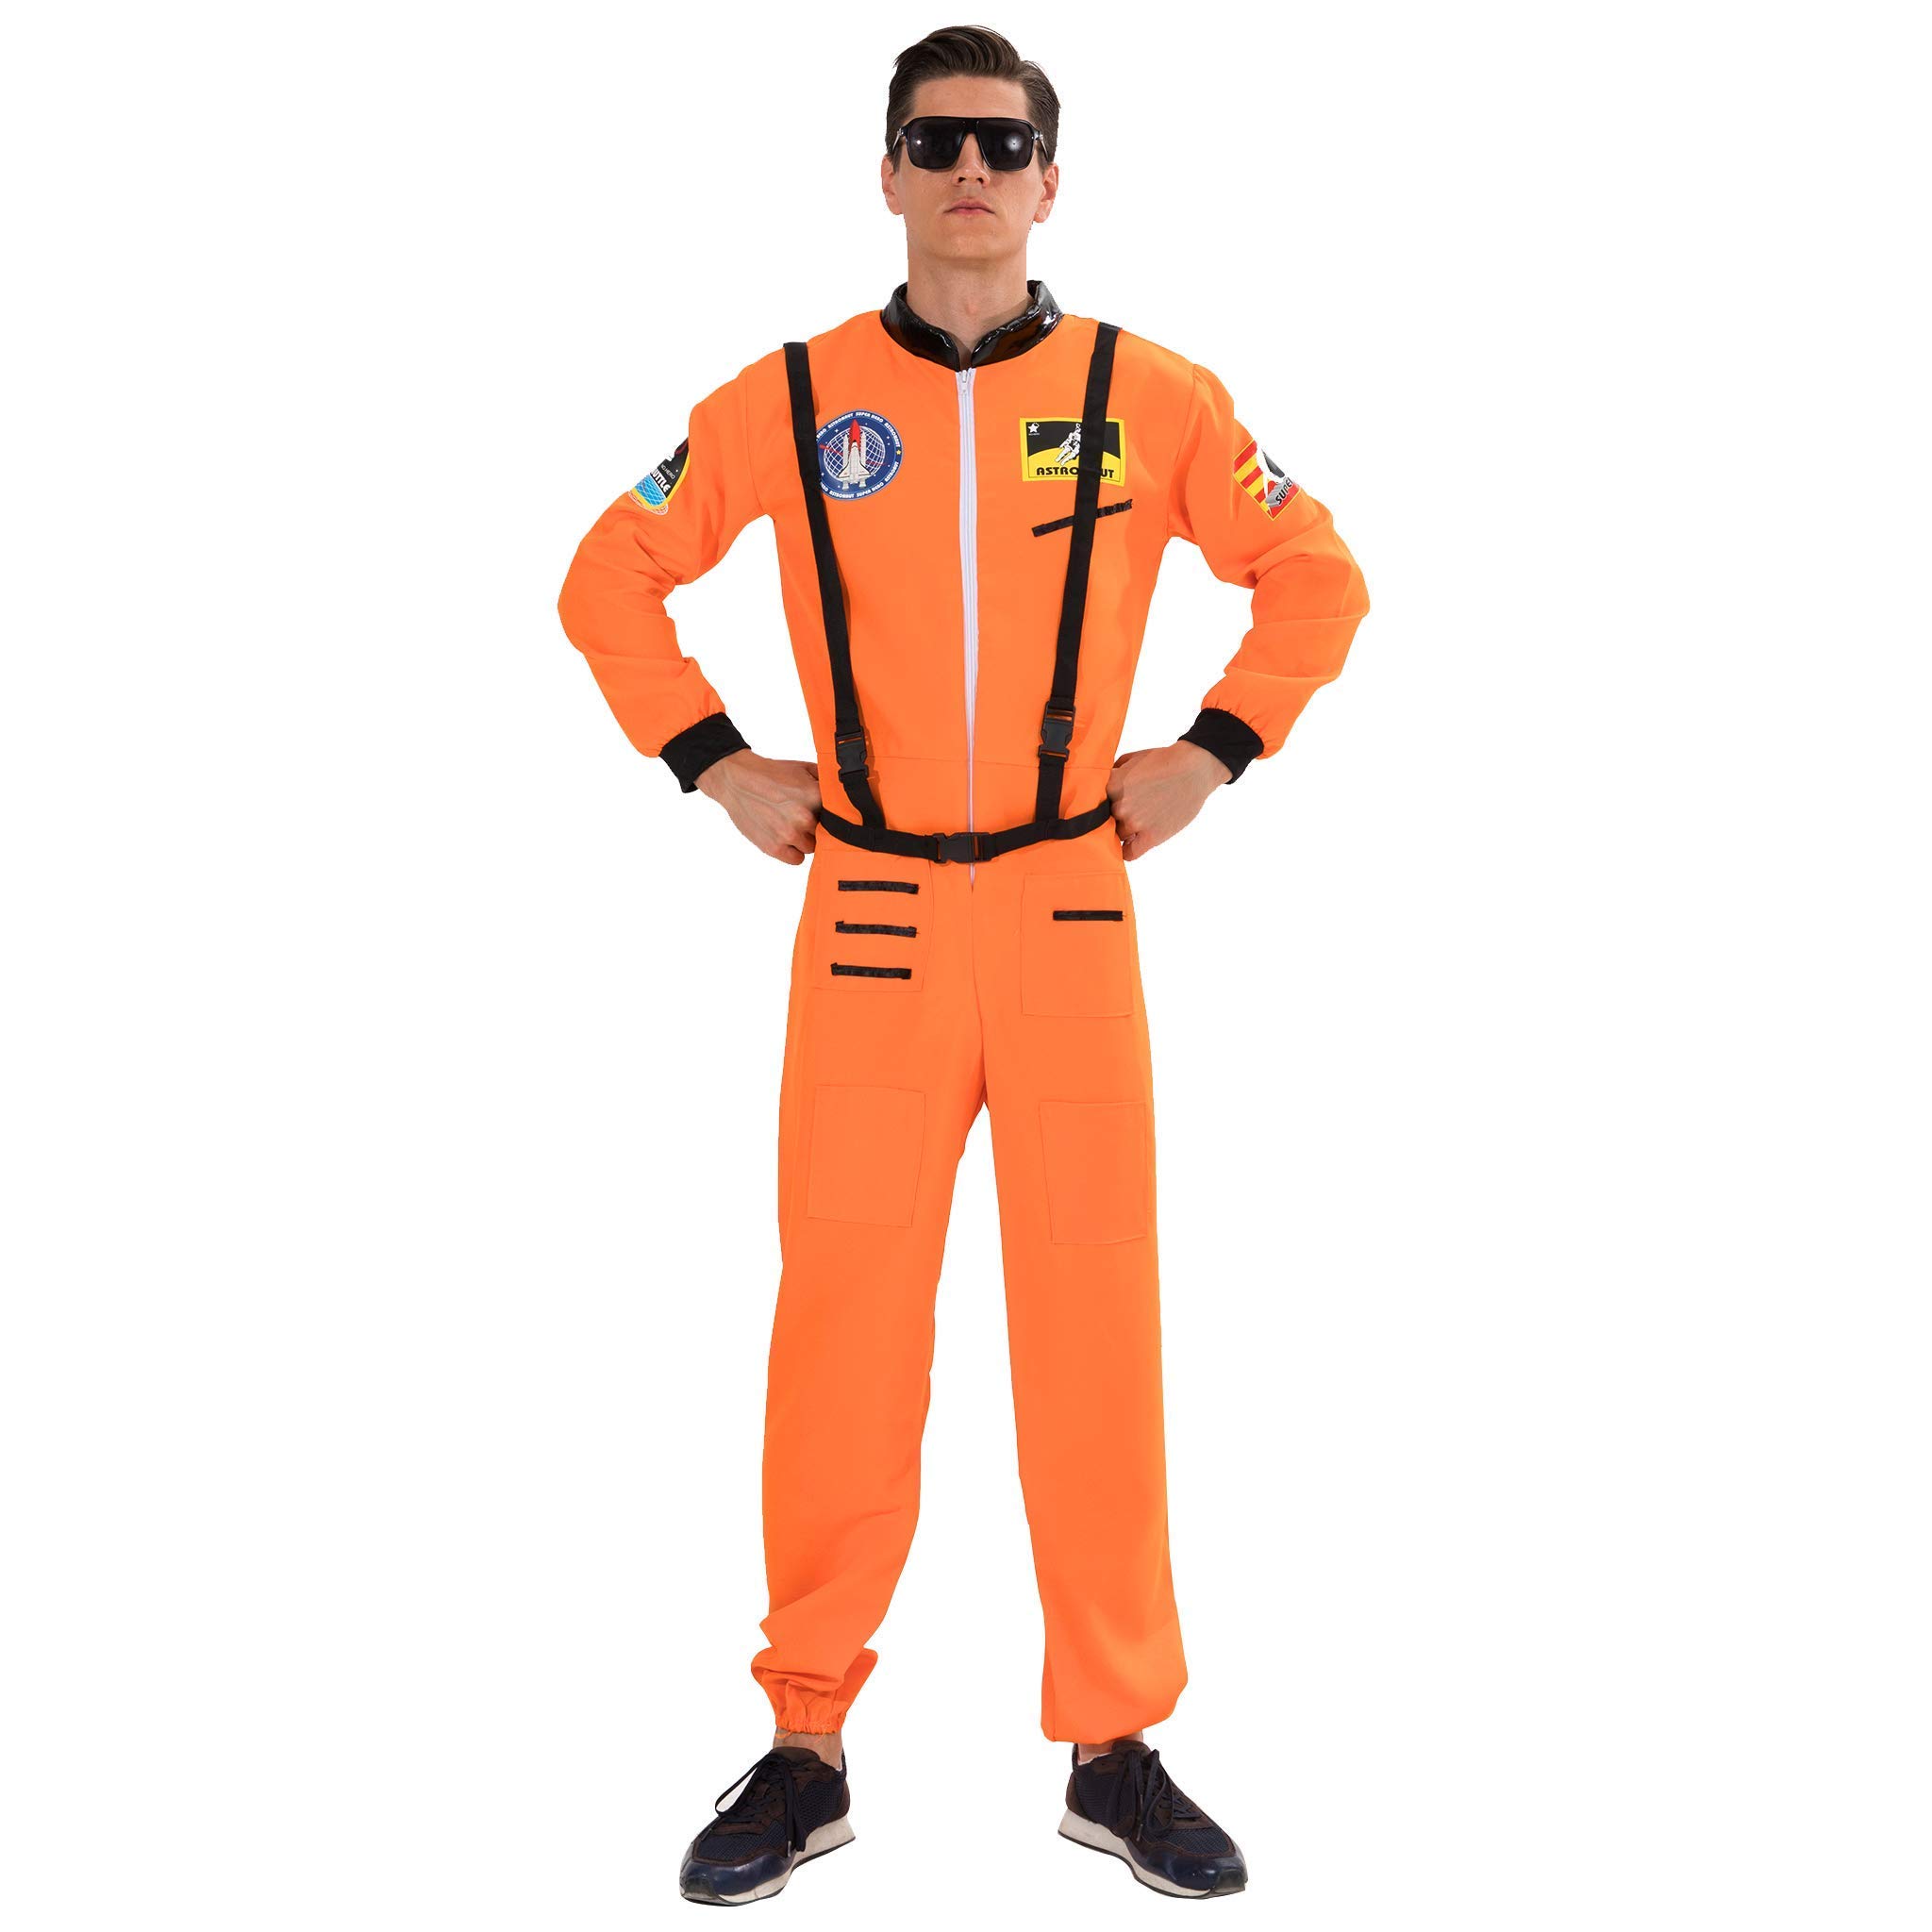 EraSpooky Herren Astronaut Kostüm Raumfahrer Anzug Halloween Erwachsene Kostüme für Männer